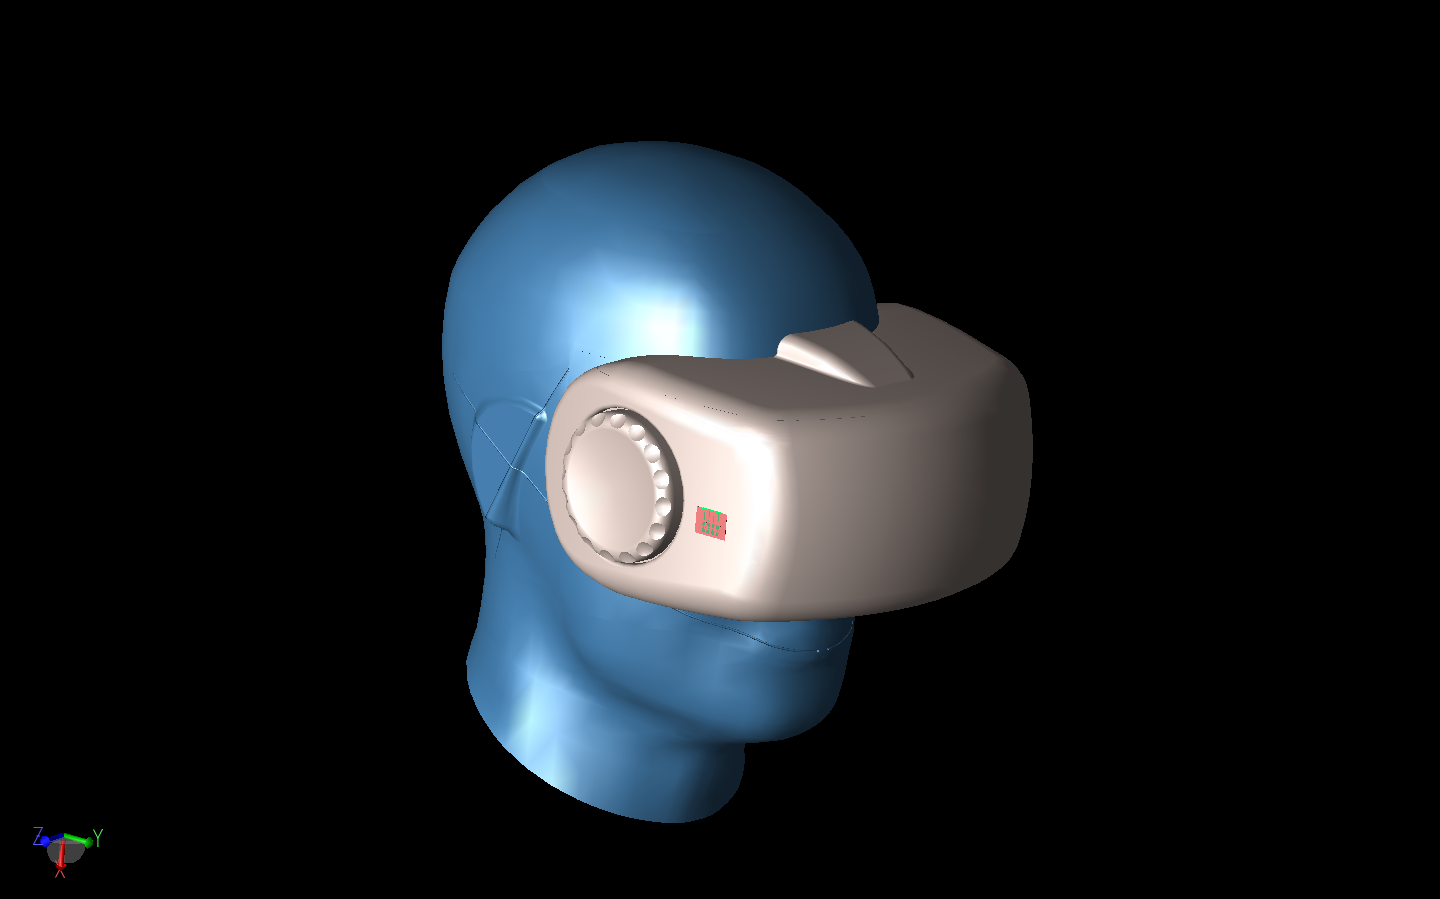 Figura 8: El conjunto de antenas se muestra montado en un casco de realidad virtual. El casco está fijado a un modelo de cabeza fantasma.